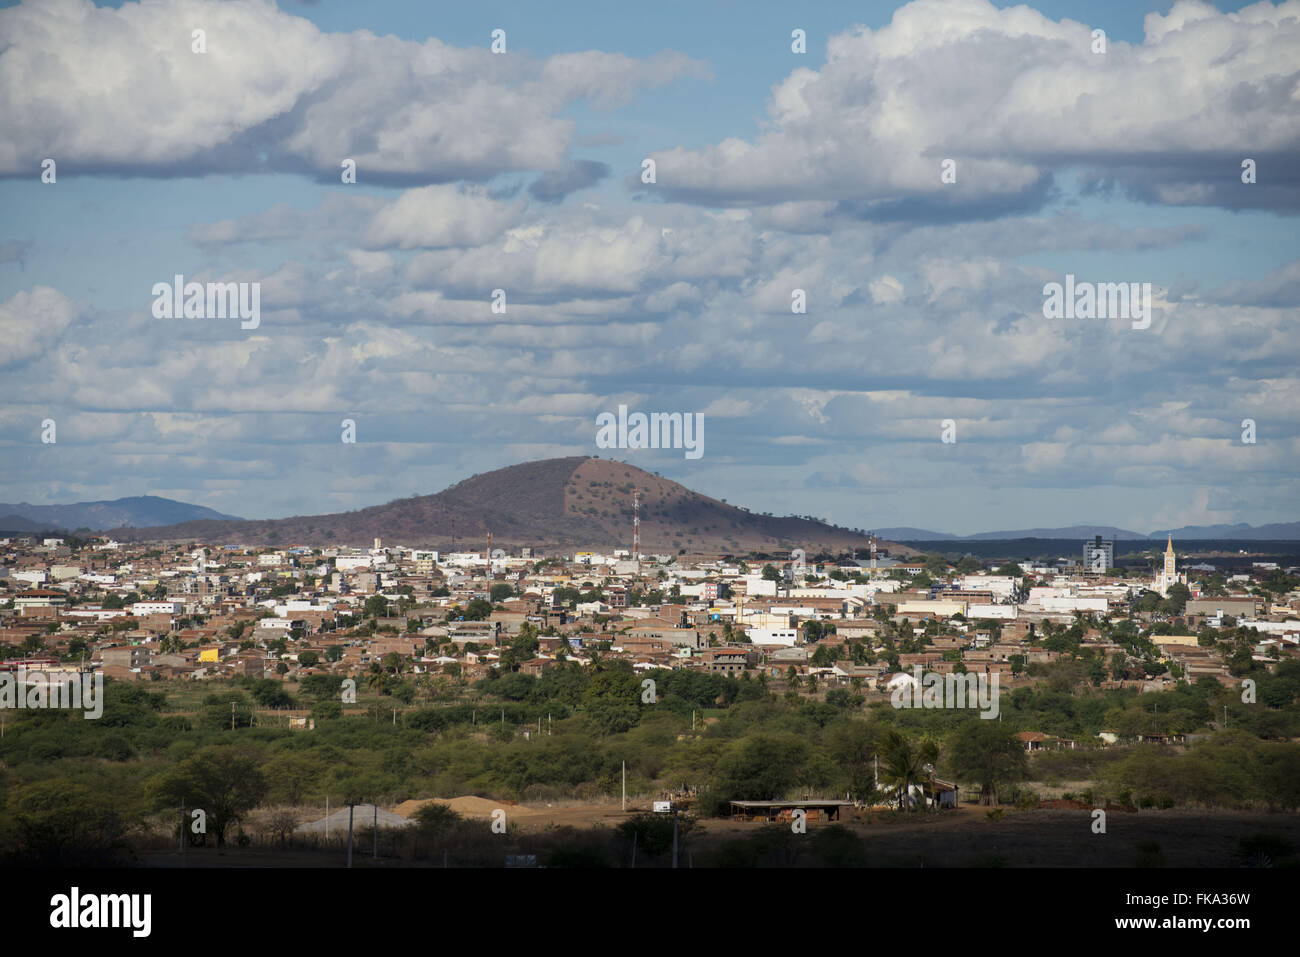 Vista general de la ciudad de Sierra tallados, conocida como la capital de xaxado Foto de stock